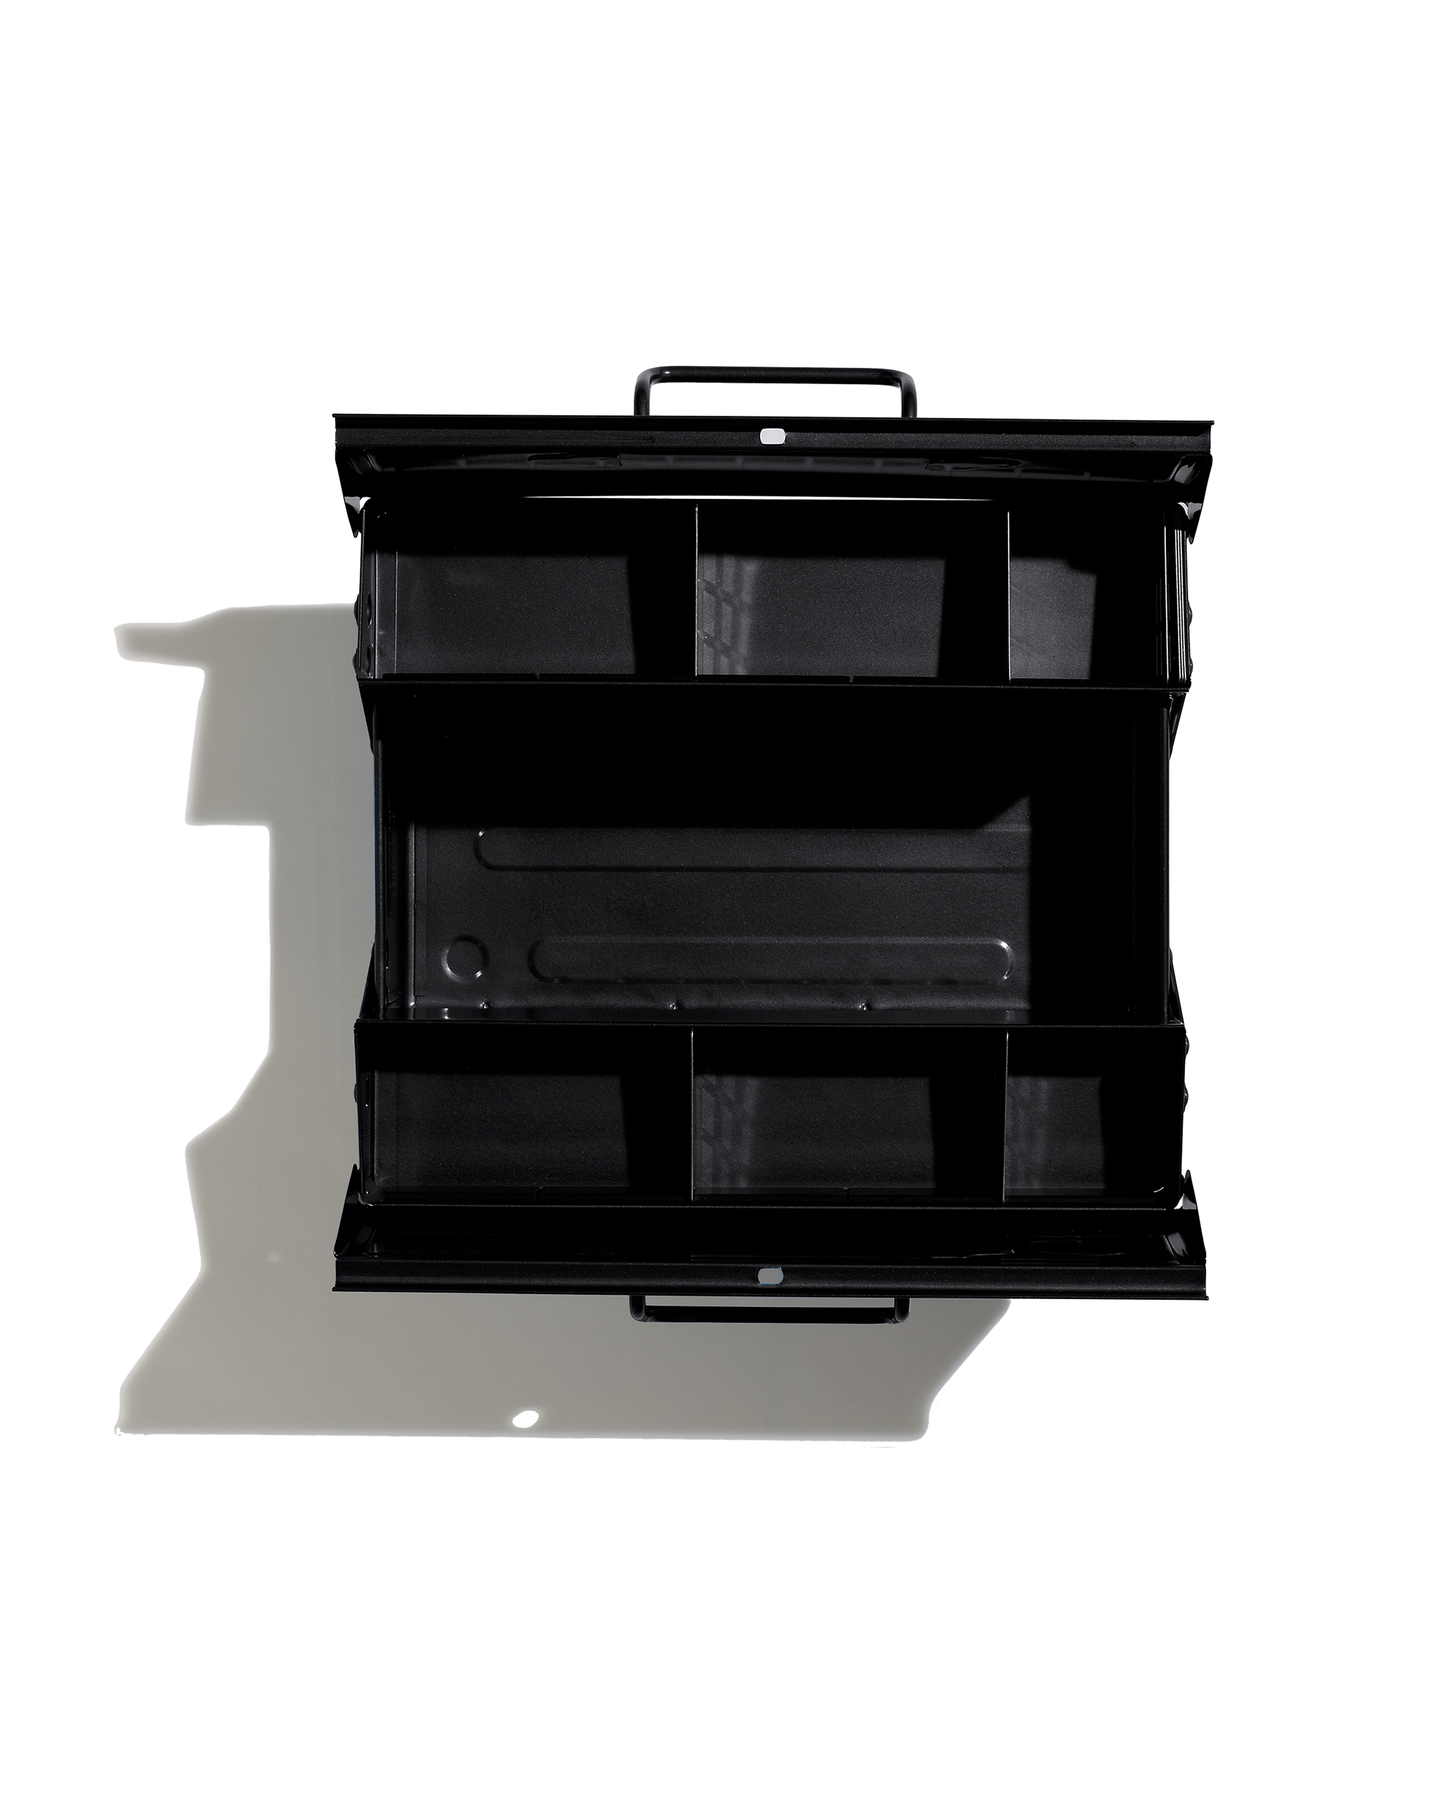 Toyo Steel ST-350 black tool box